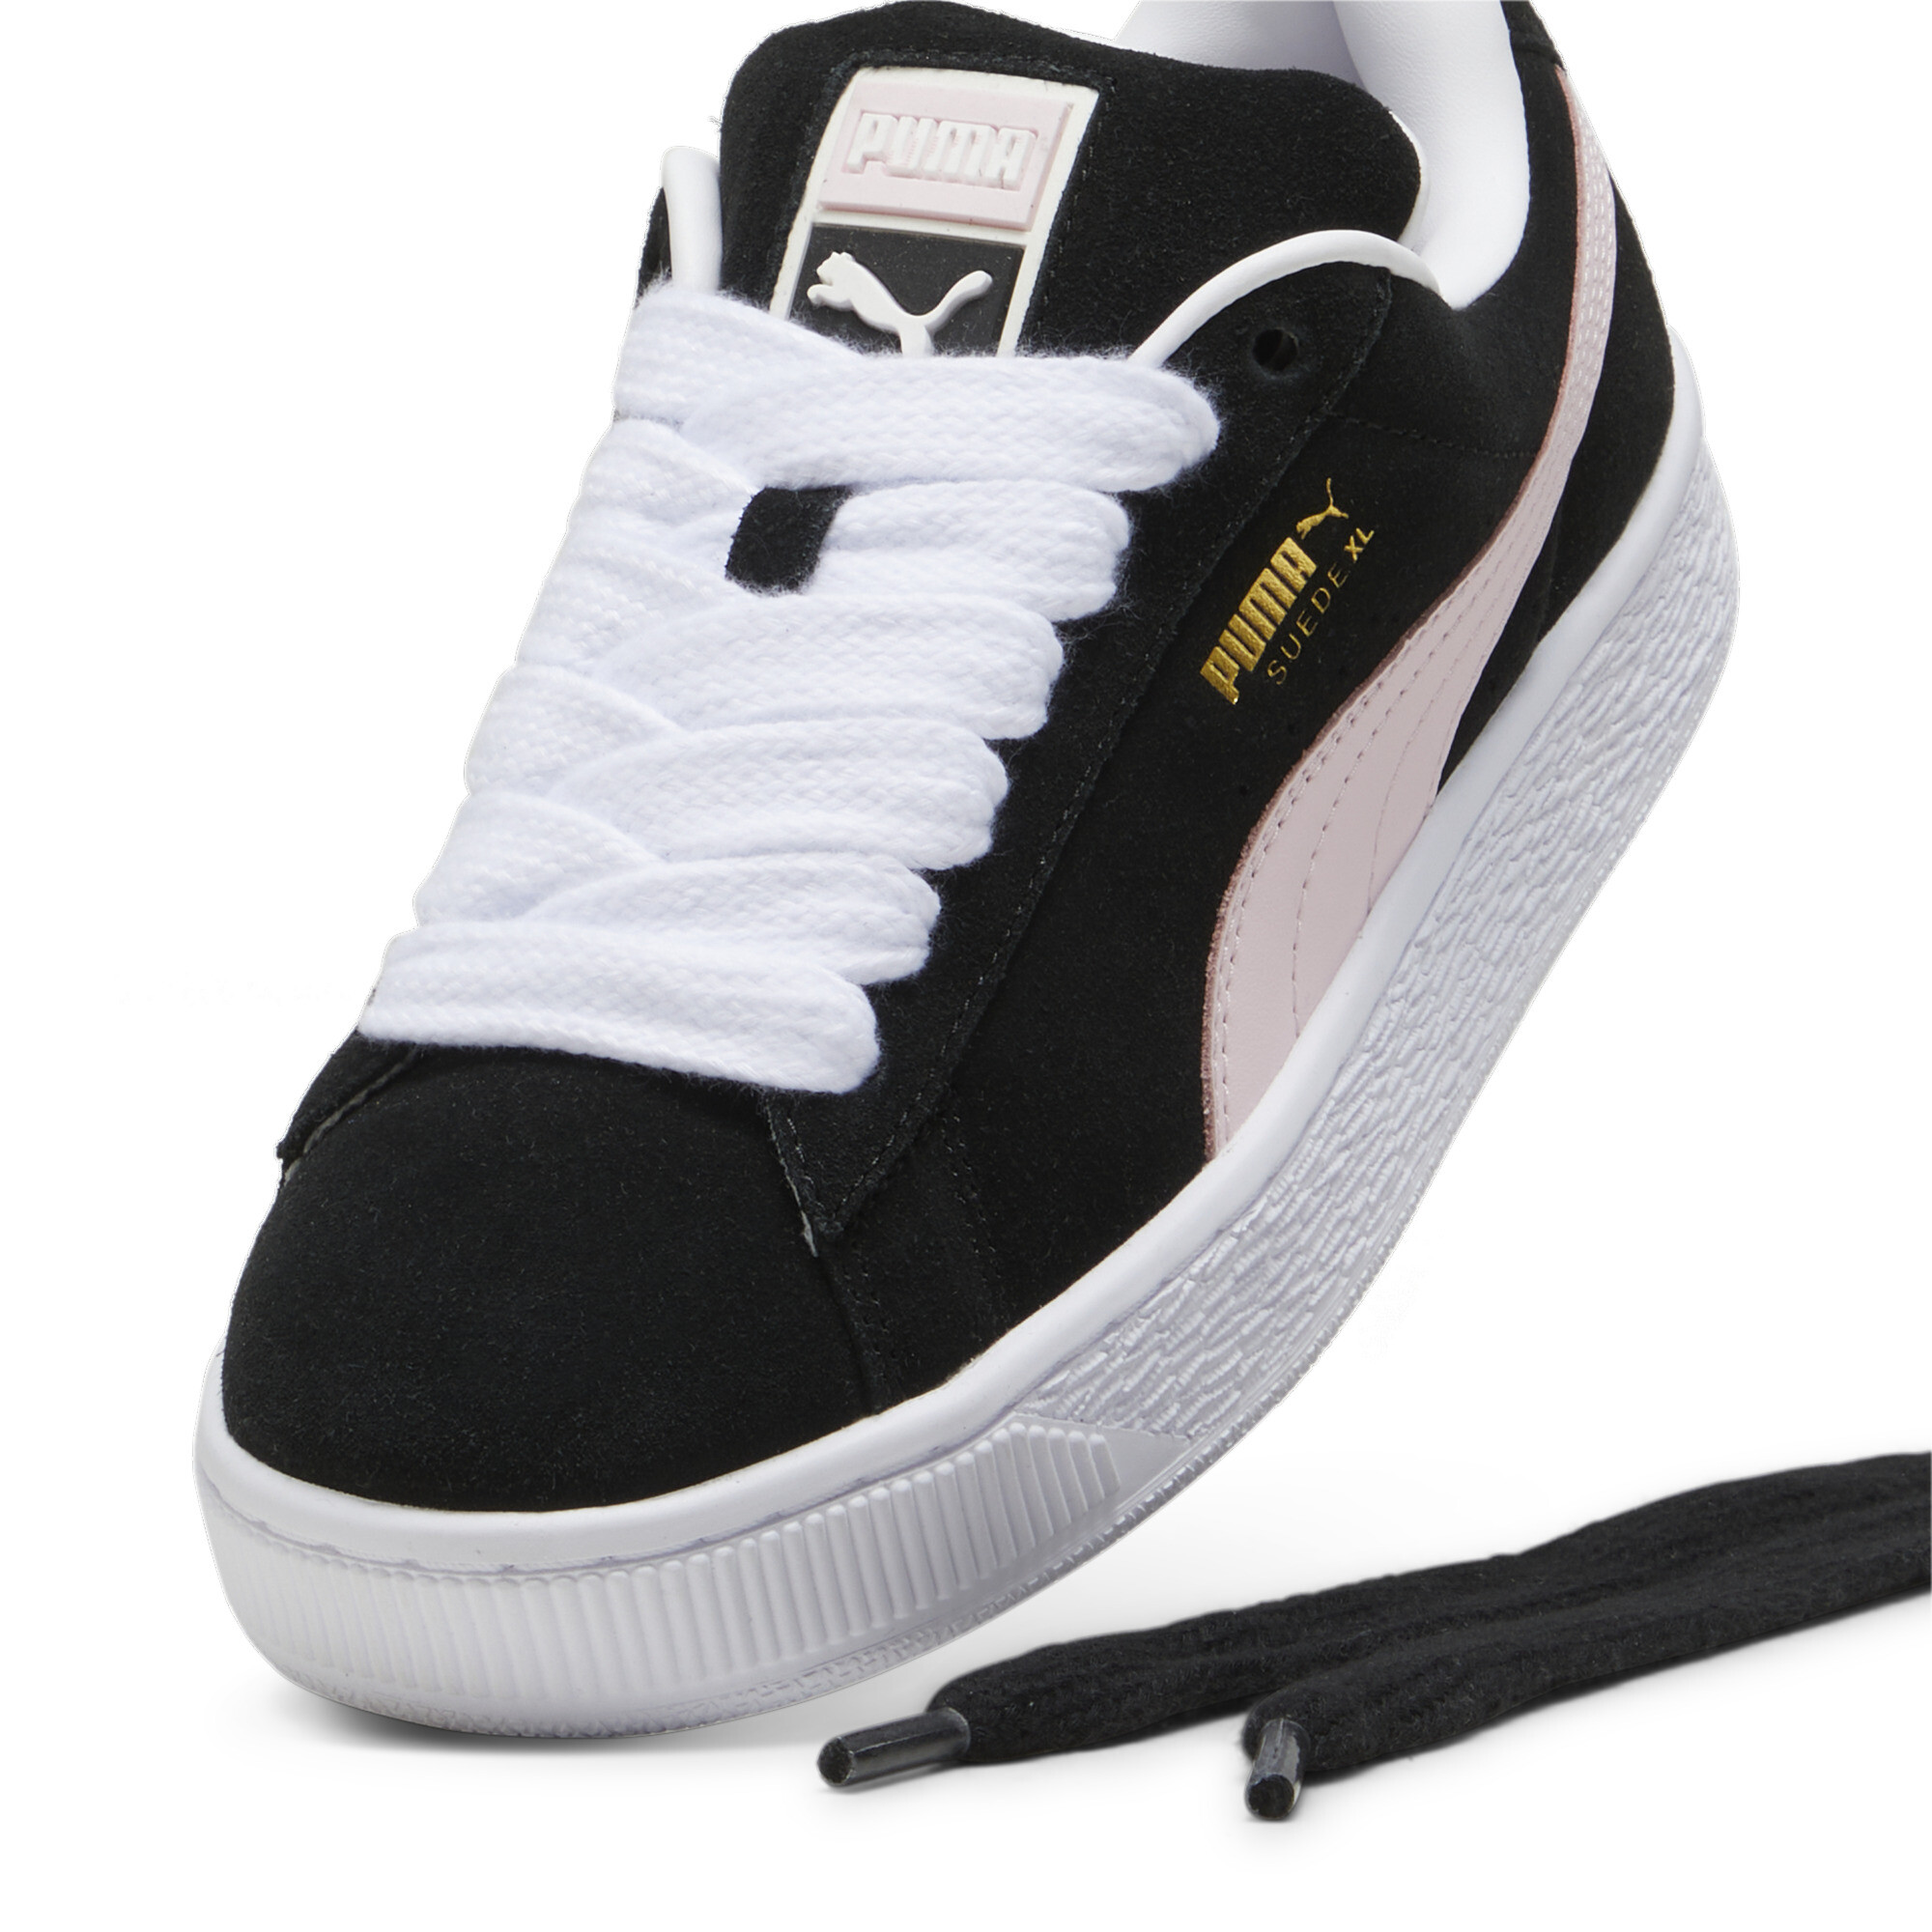 Puma Suede XL Sneakers Unisex, Black, Size 44.5, Shoes